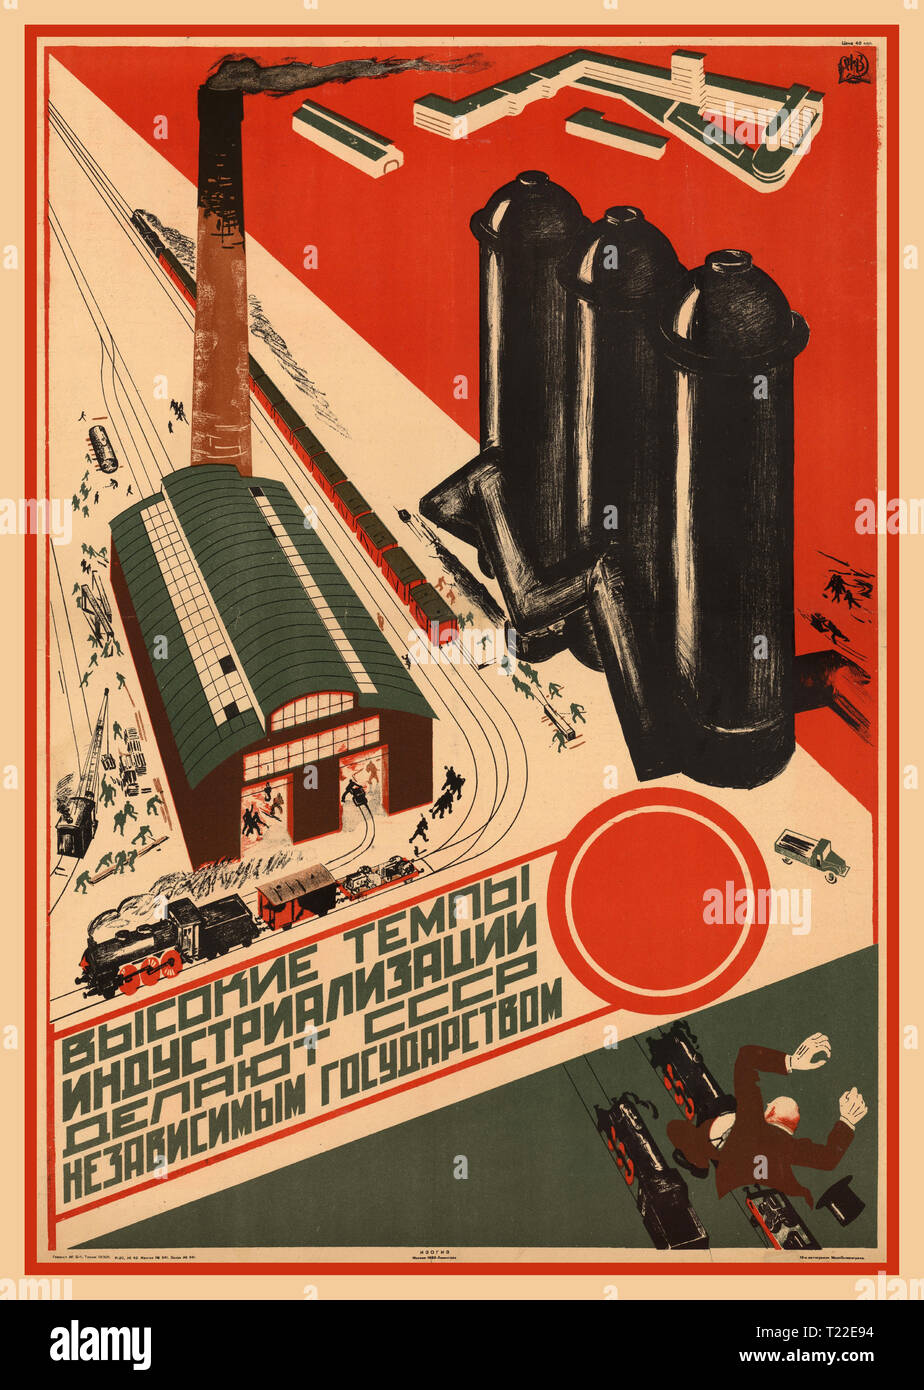 Vintage URSS Soviet Russian soviet Union Political Propaganda Poster 1930 “gli alti tassi di industrializzazione fanno dell’URSS uno stato indipendente” URSS Soviet Russia soviet Unione Sovietica Foto Stock